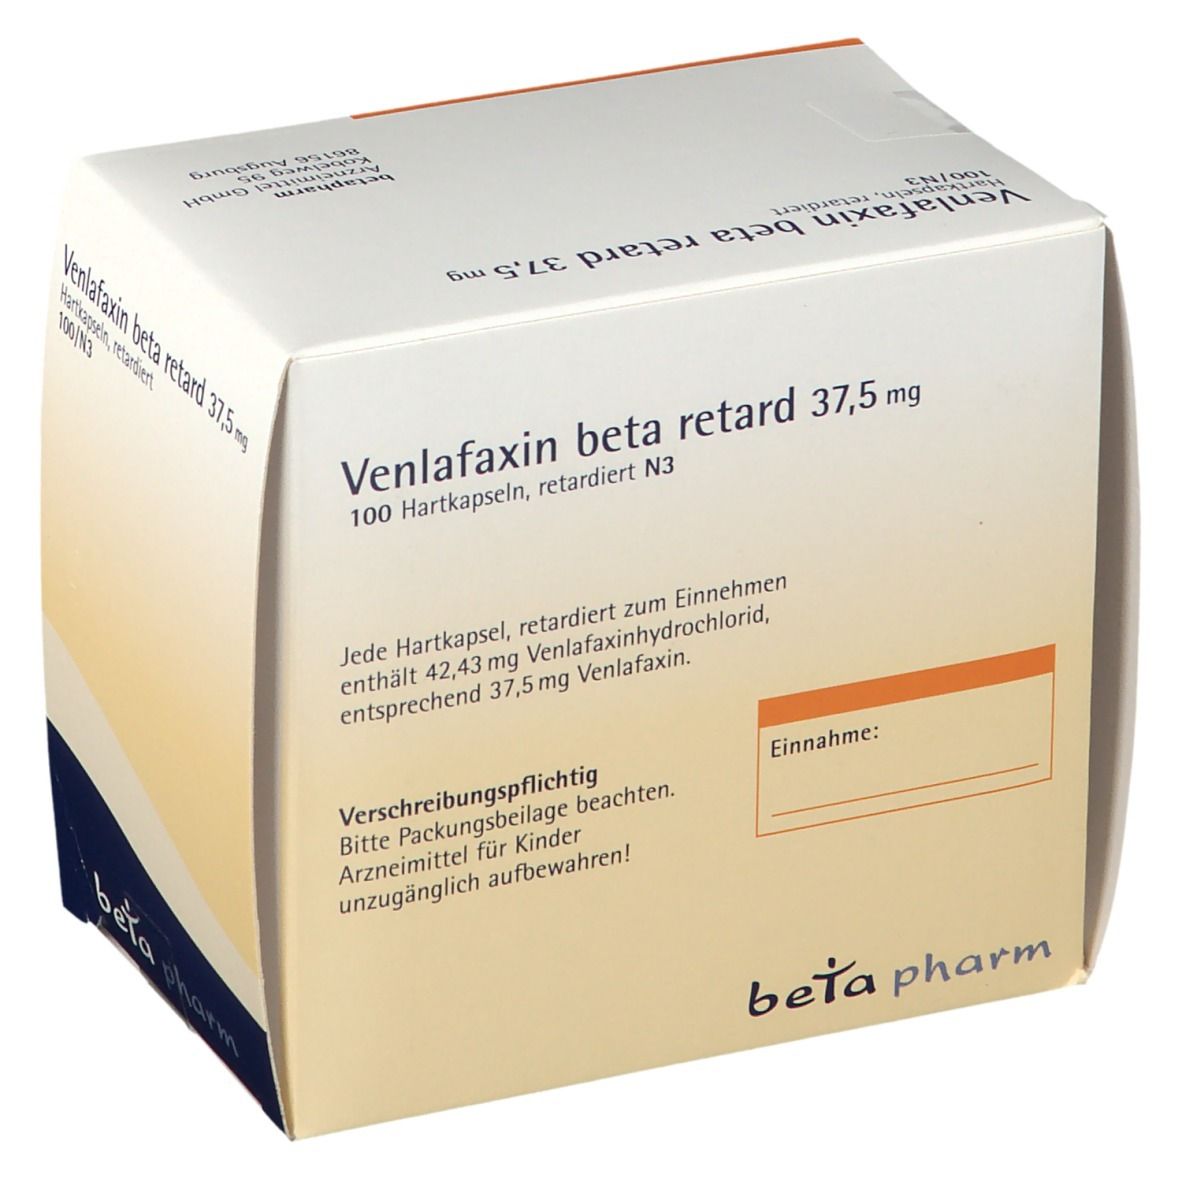 Venlafaxin beta retard 37,5 mg